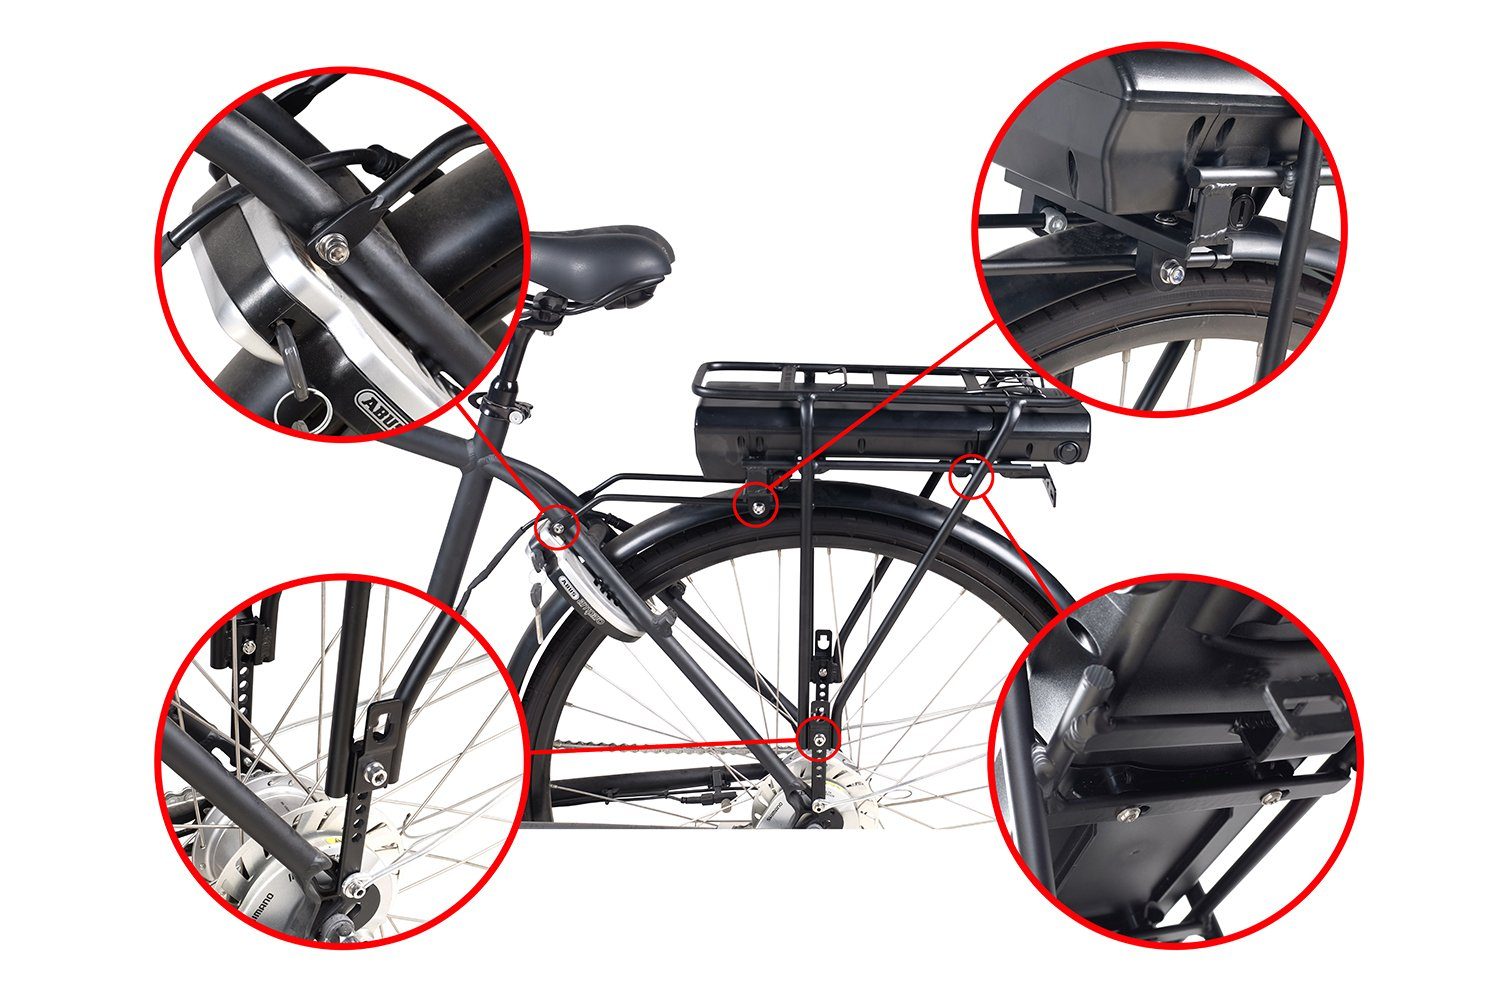 (36 V) Akku für Fahrradgepäckträgersitz PowerSmart 14Ah BBF und und Ladegerät mit mAh Lissabon, E-Bike Lyon, LEB36HS92B.916 Lithium-ion (Li-ion) Batteriehalterung BBF 14000